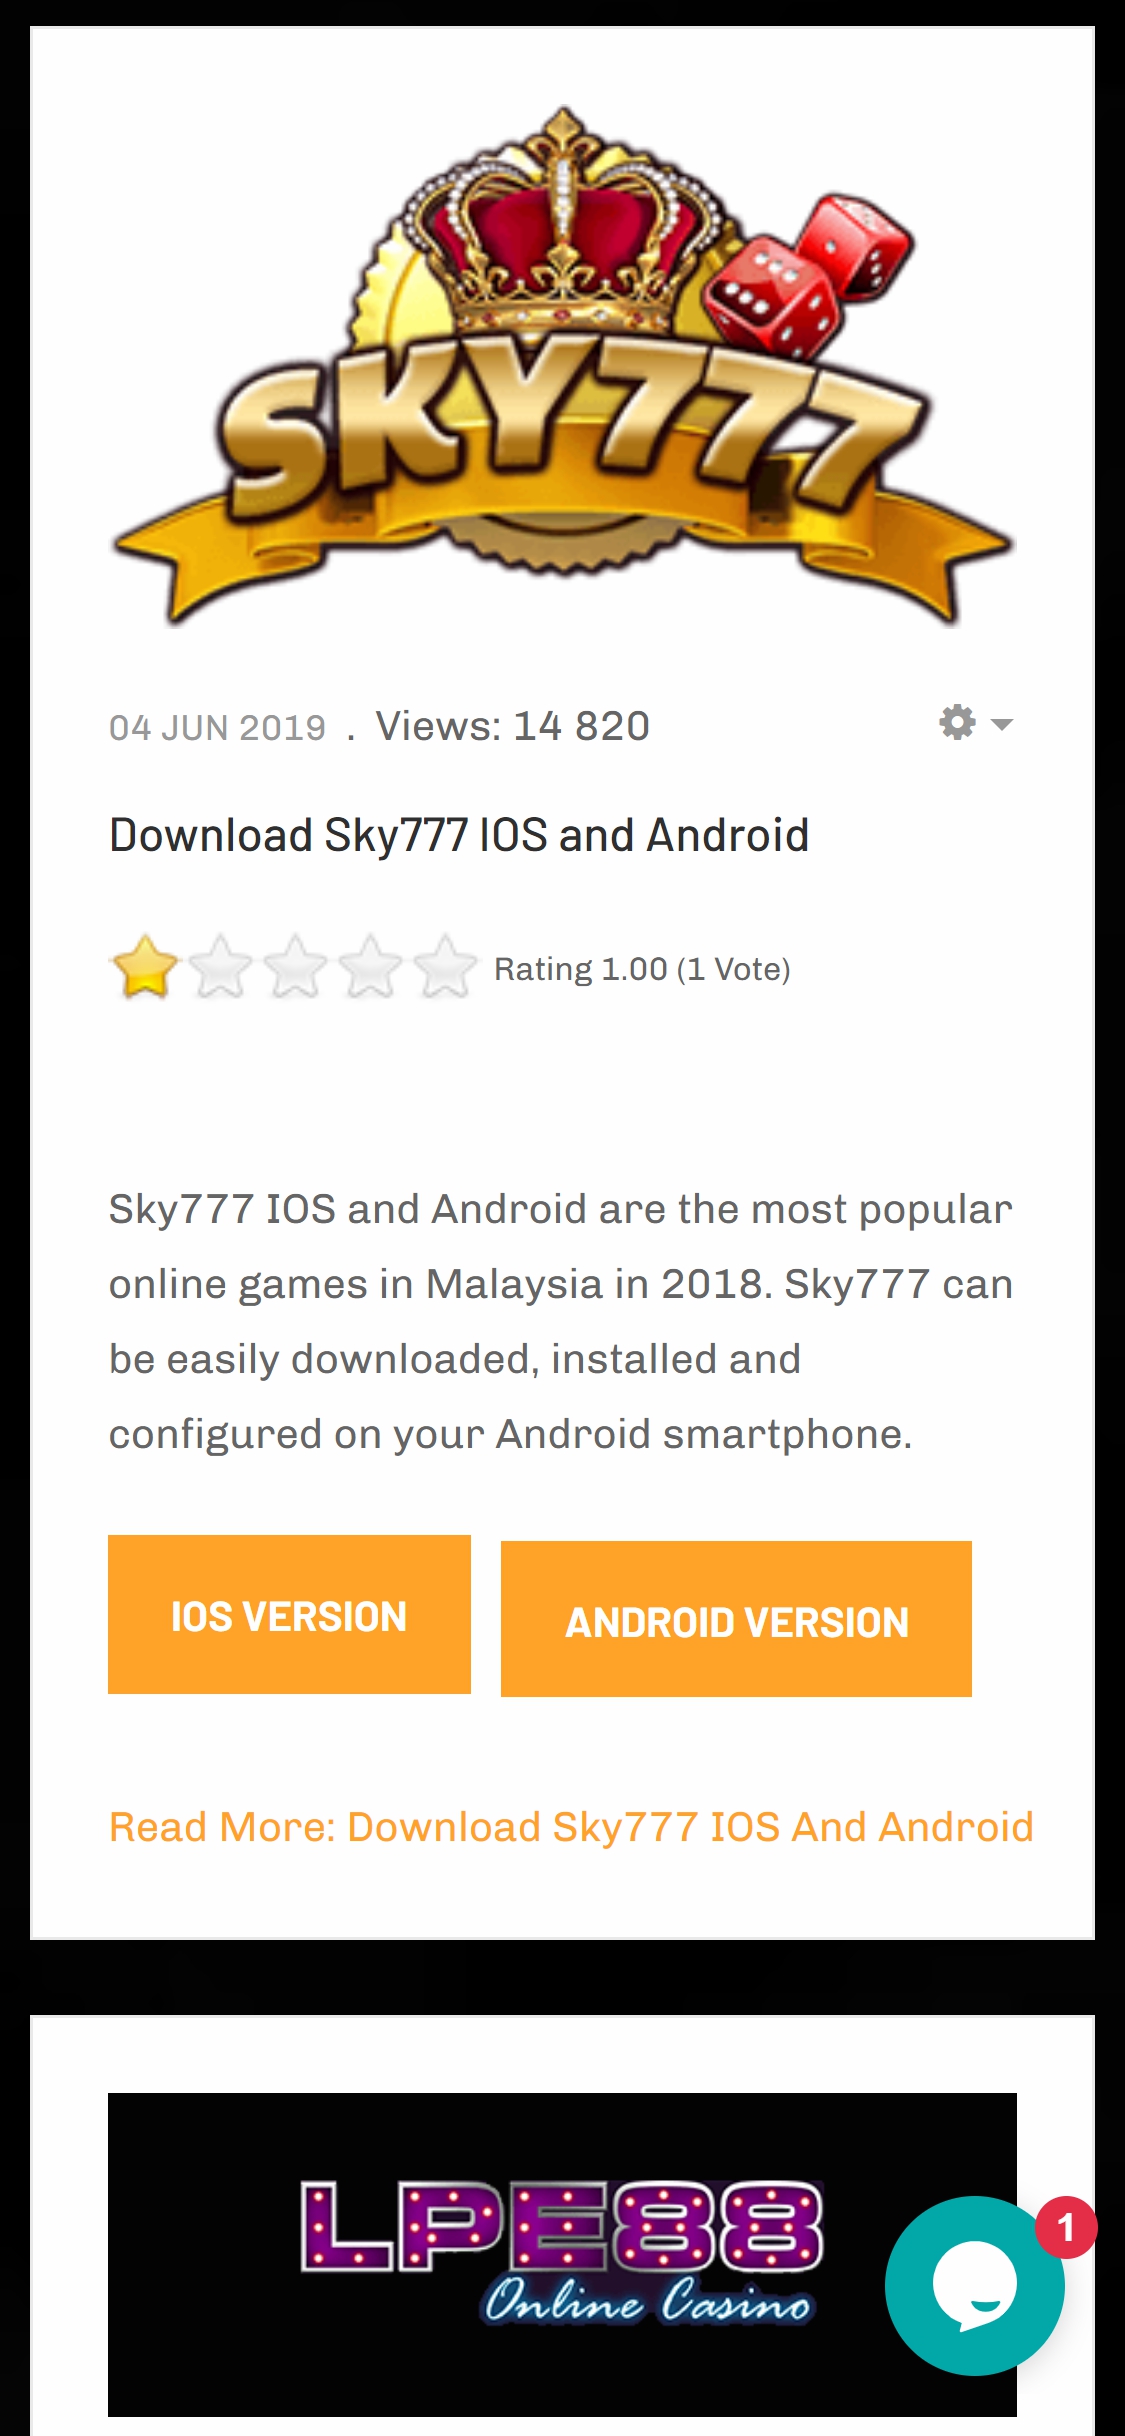 Sky777 Casino Mobile App Review